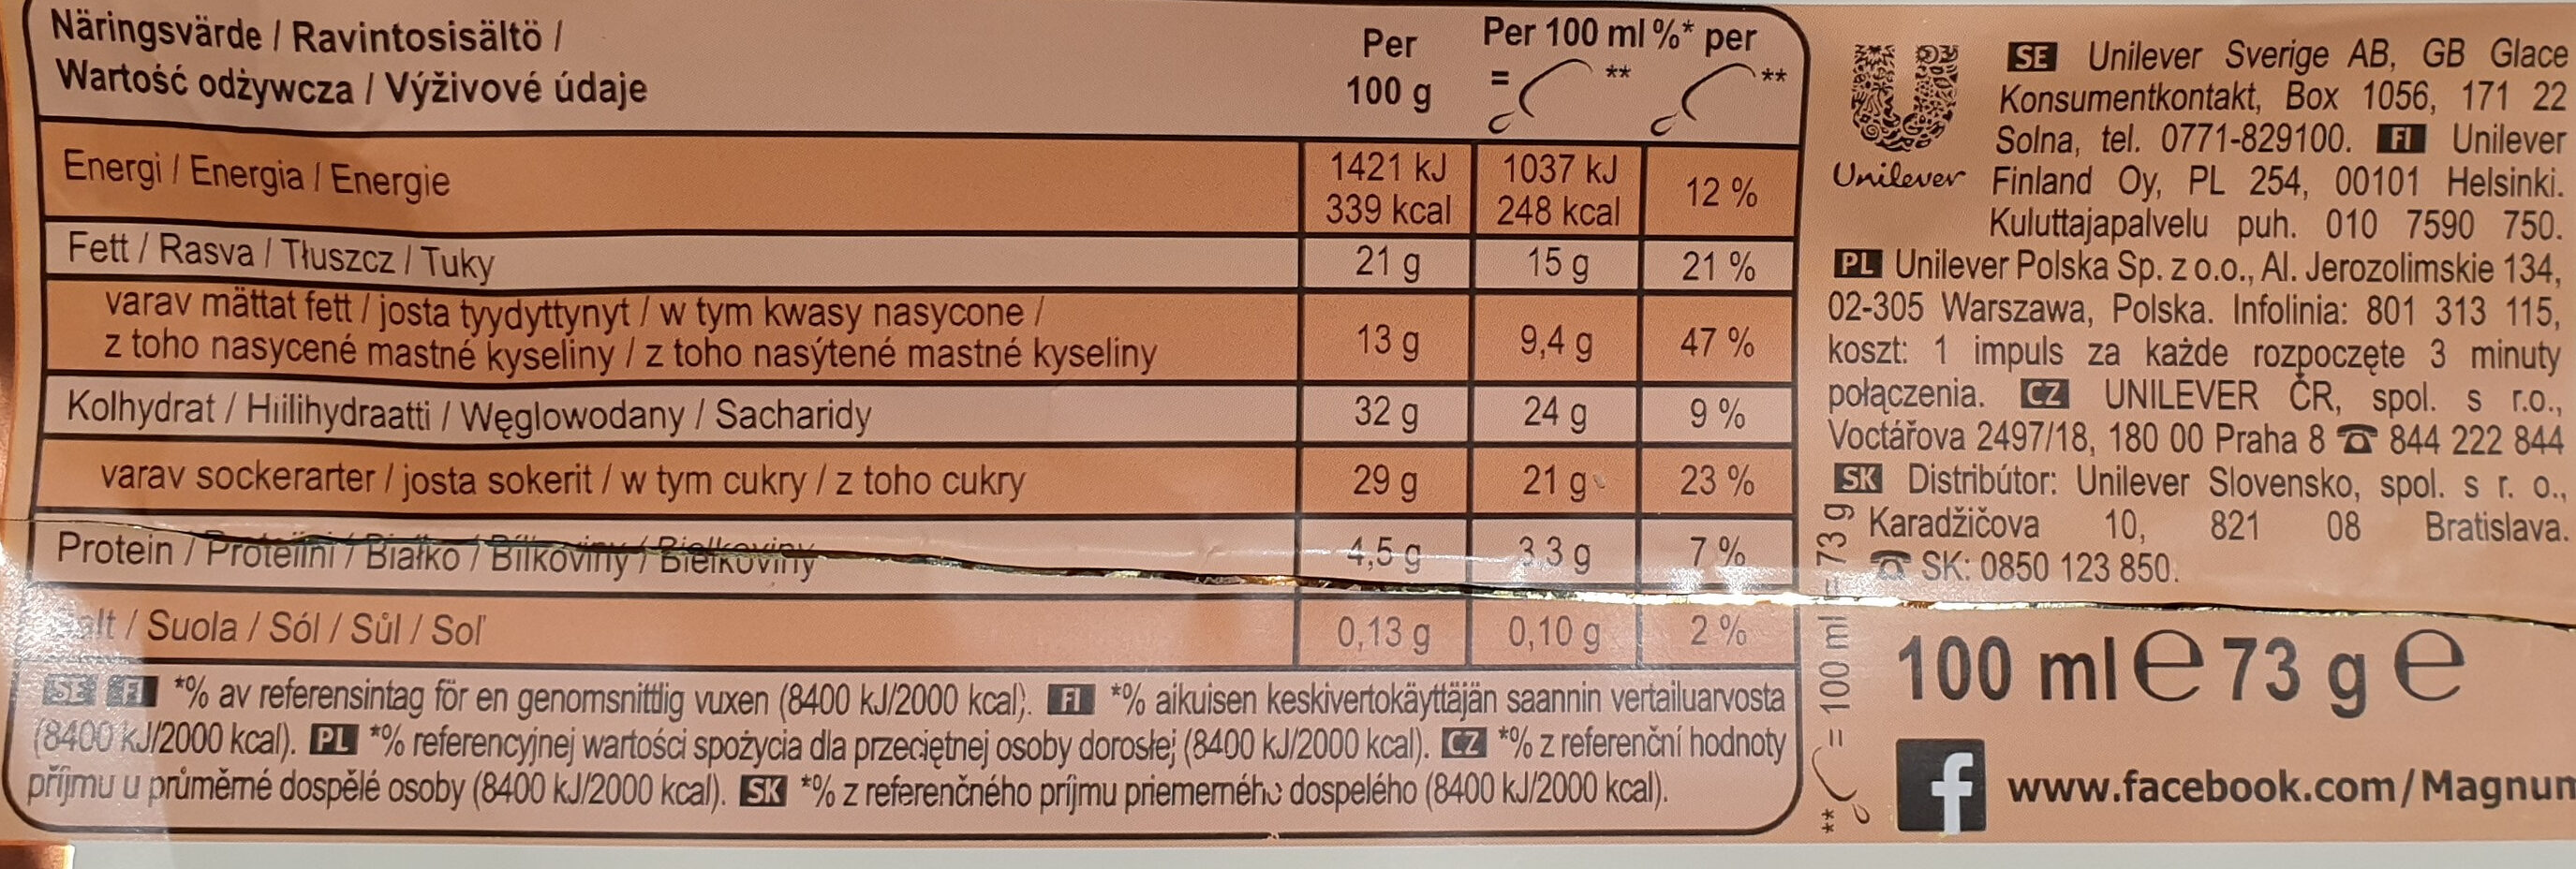 Lody z wanilią z Madagaskaru w białej czekoladzie (28%) z migdałami (5%) - Ravintosisältö - pl